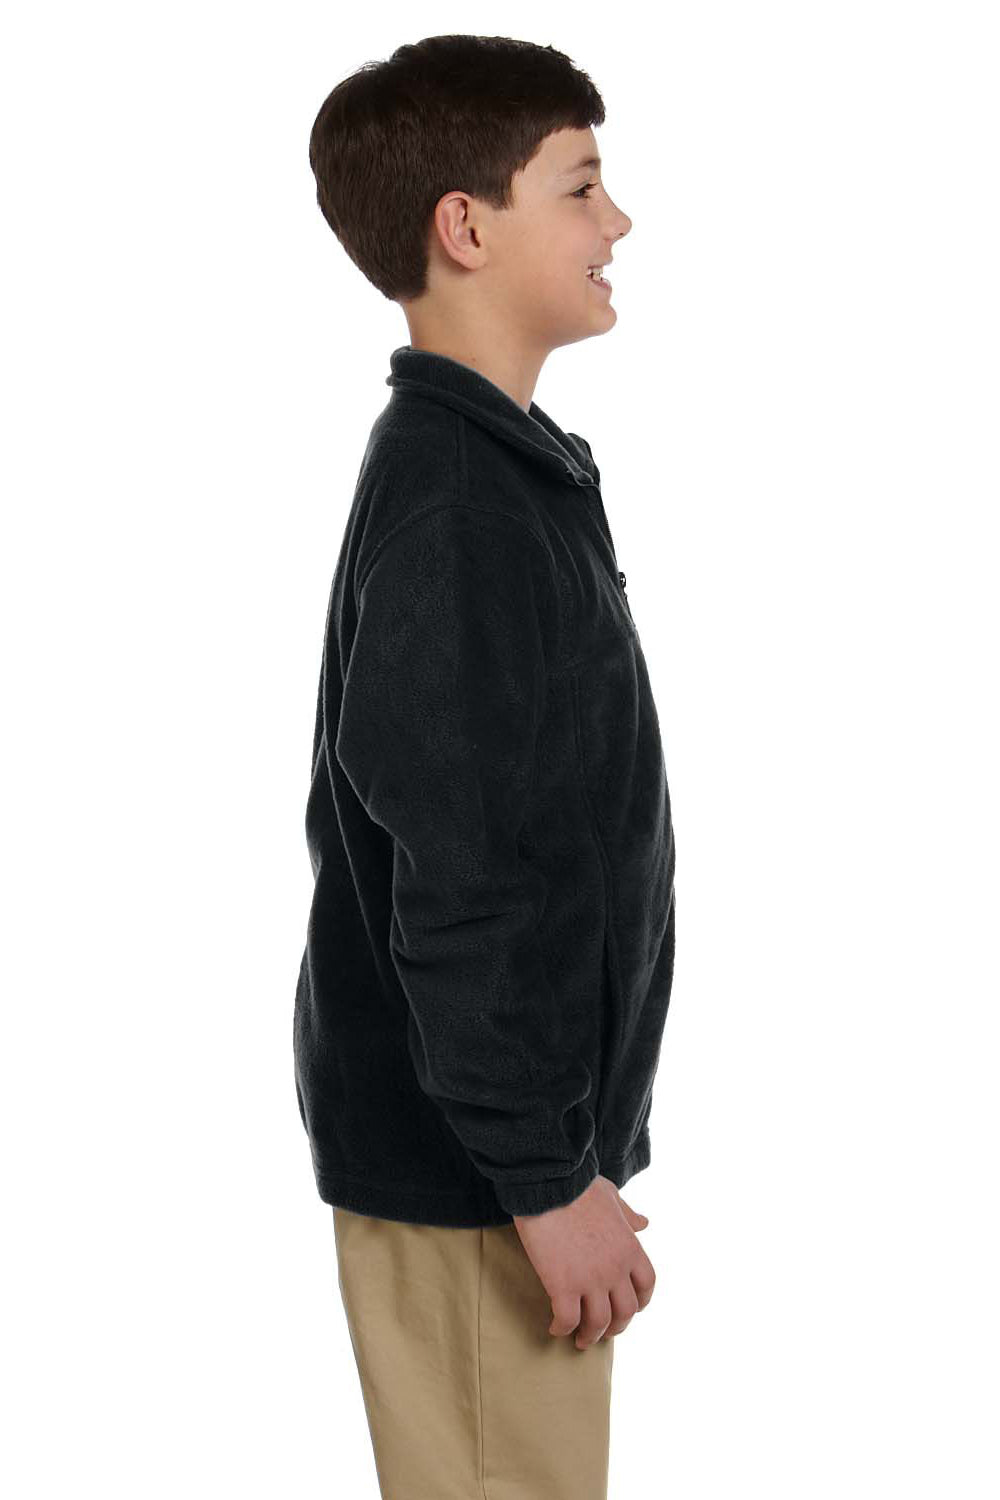 Harriton M990Y Youth Full Zip Fleece Jacket Black Side